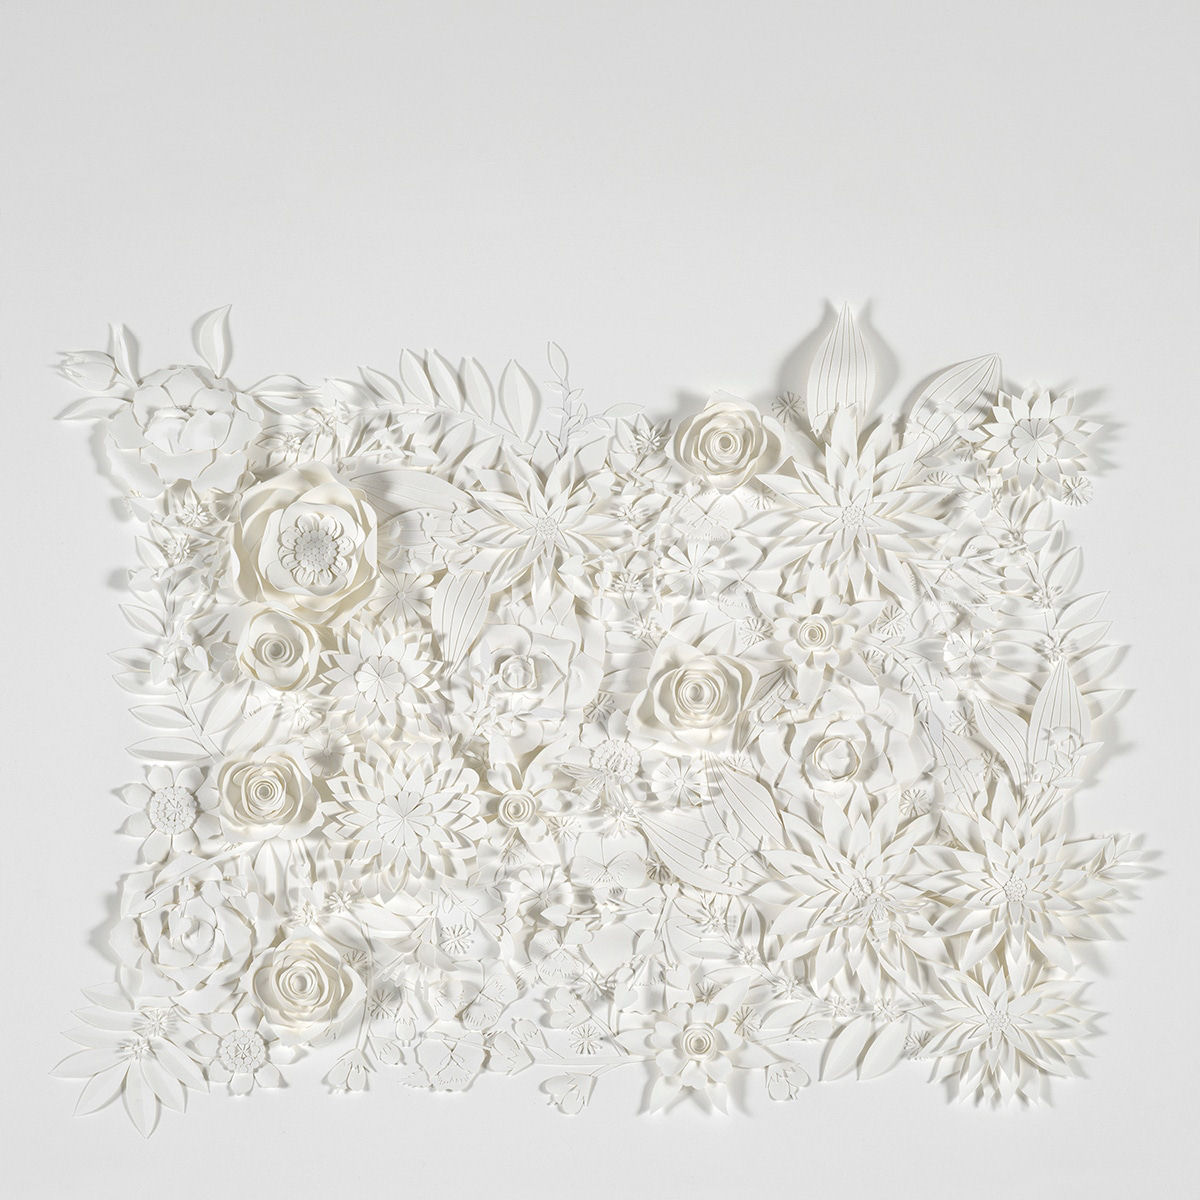 Artista cria 'jardins' exuberantes com flores de papel caprichosamente cortadas 04